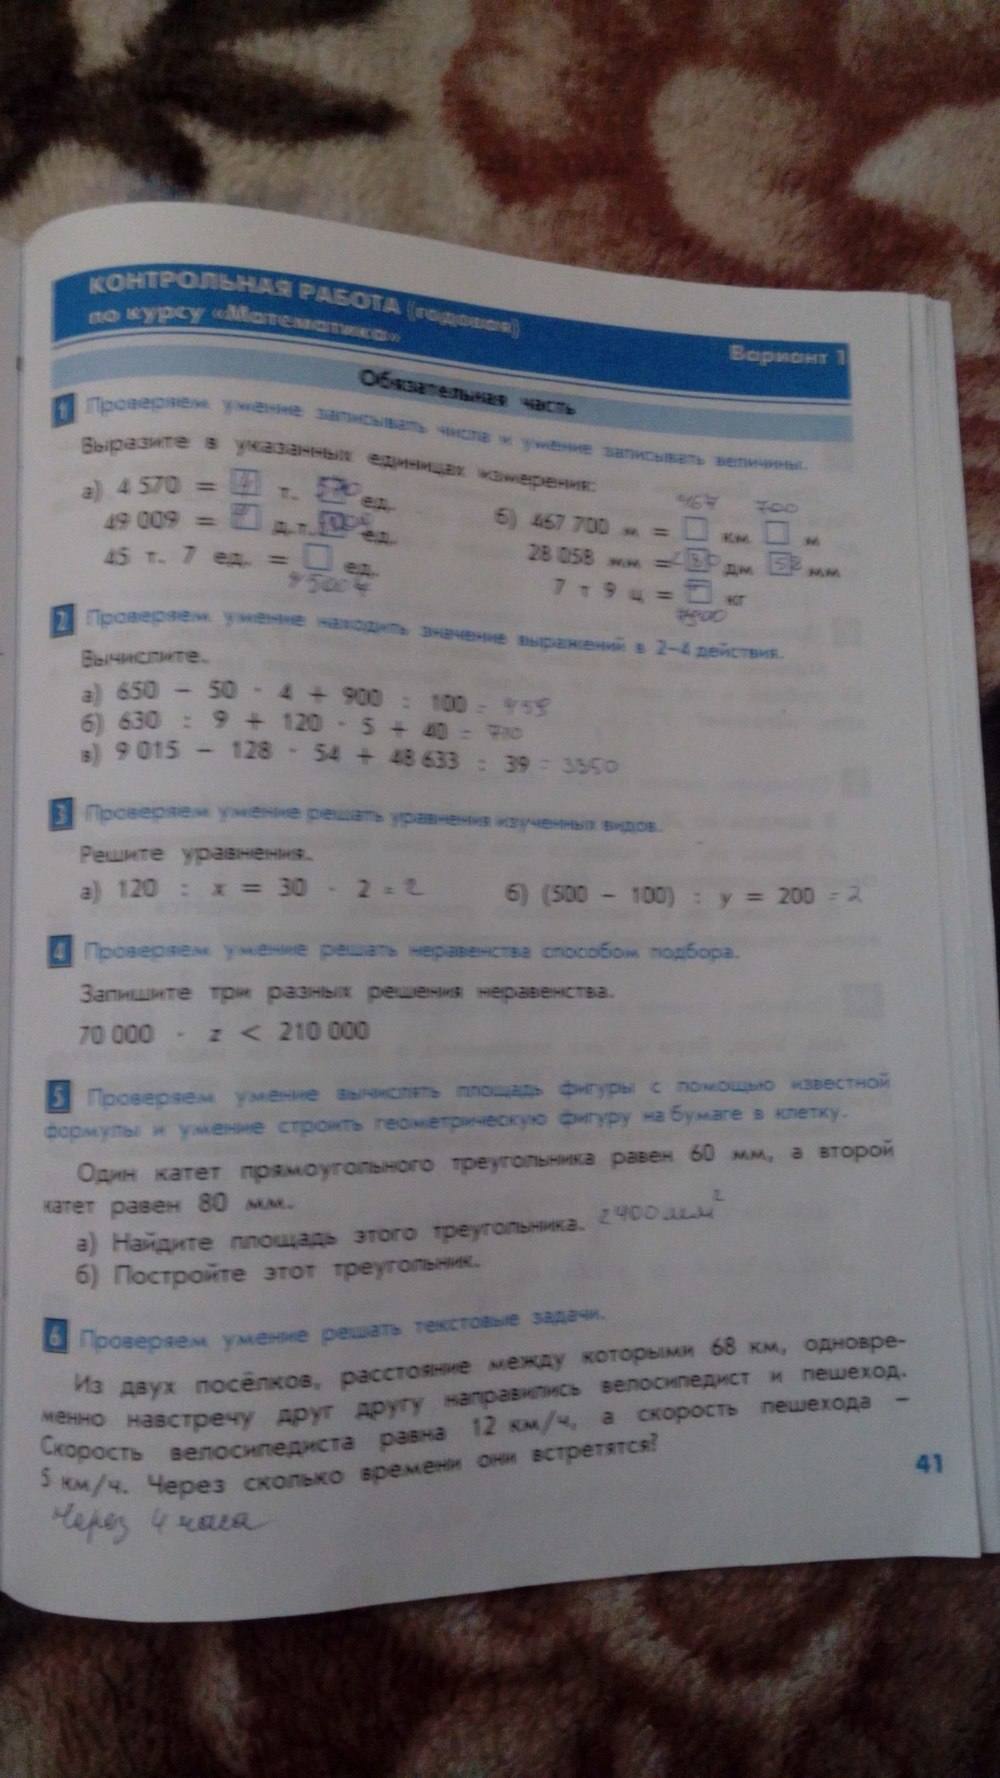 Тесты и контрольные работы, 4 класс, Козлова, Рубин, 2011, задание: стр. 41